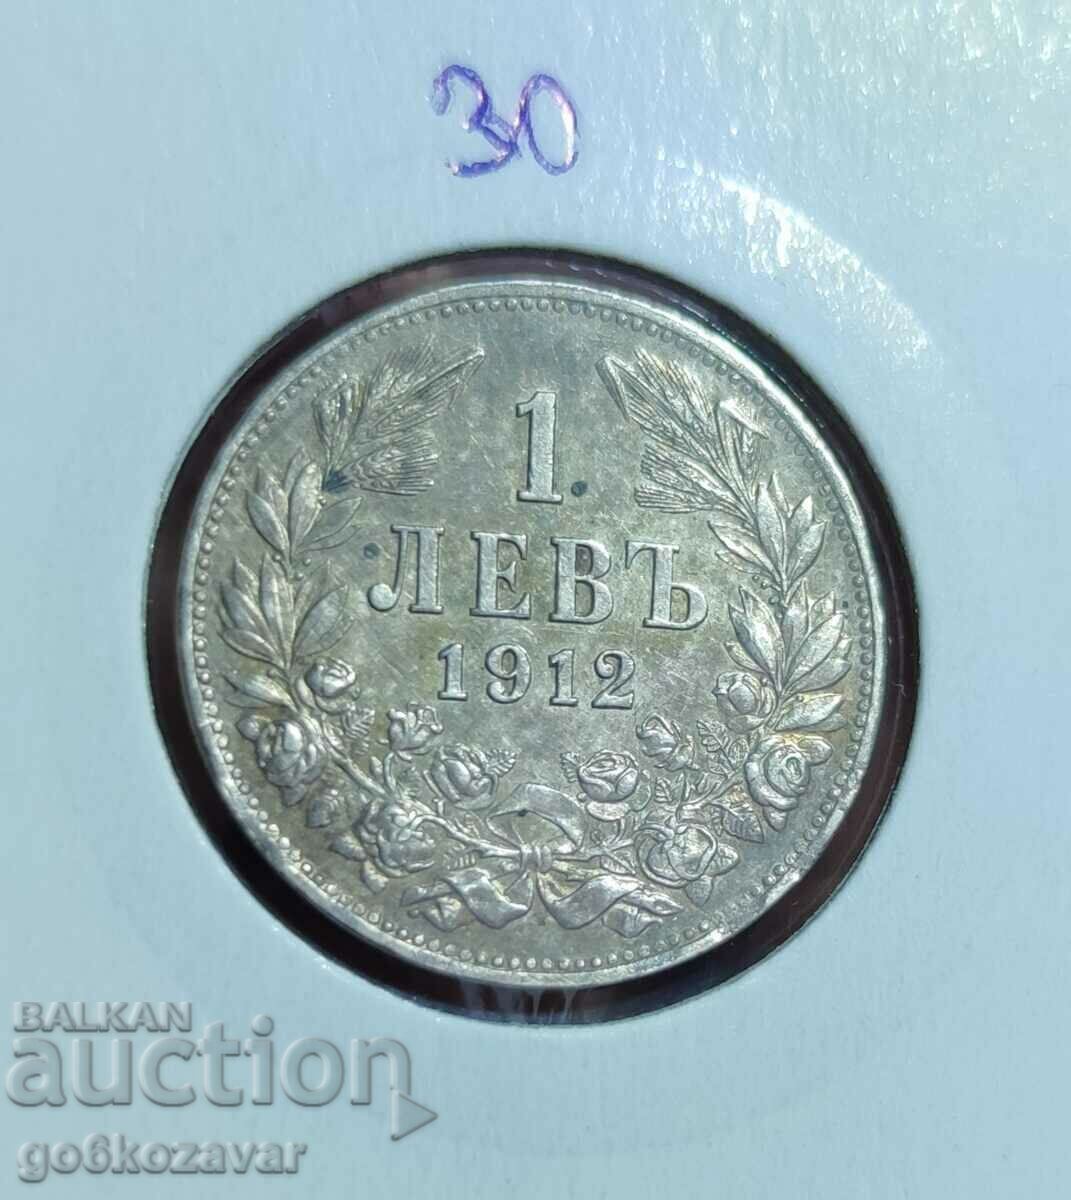 Bulgaria 1 Lev 1912 Silver Top Collection!